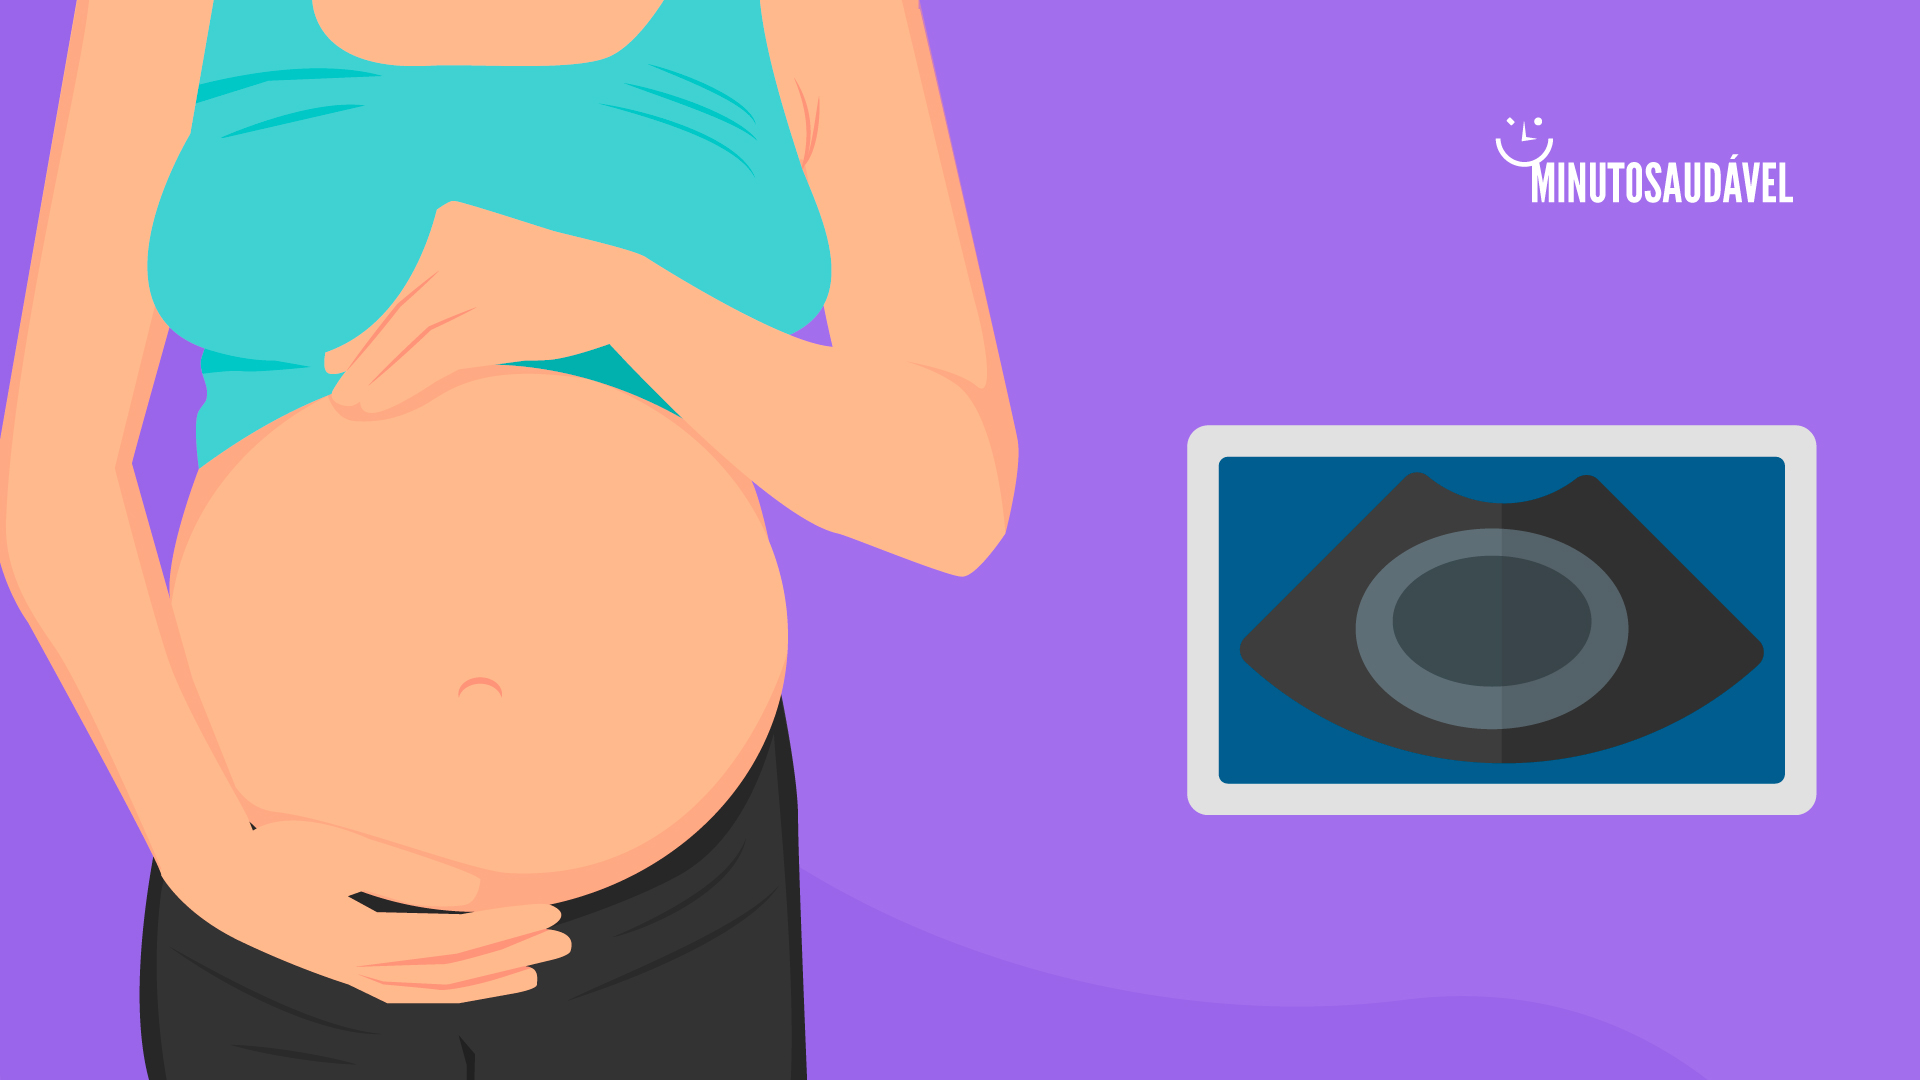 Foto de capa do artigo "O que é gravidez anembrionária? Pode ocorrer duas vezes?"